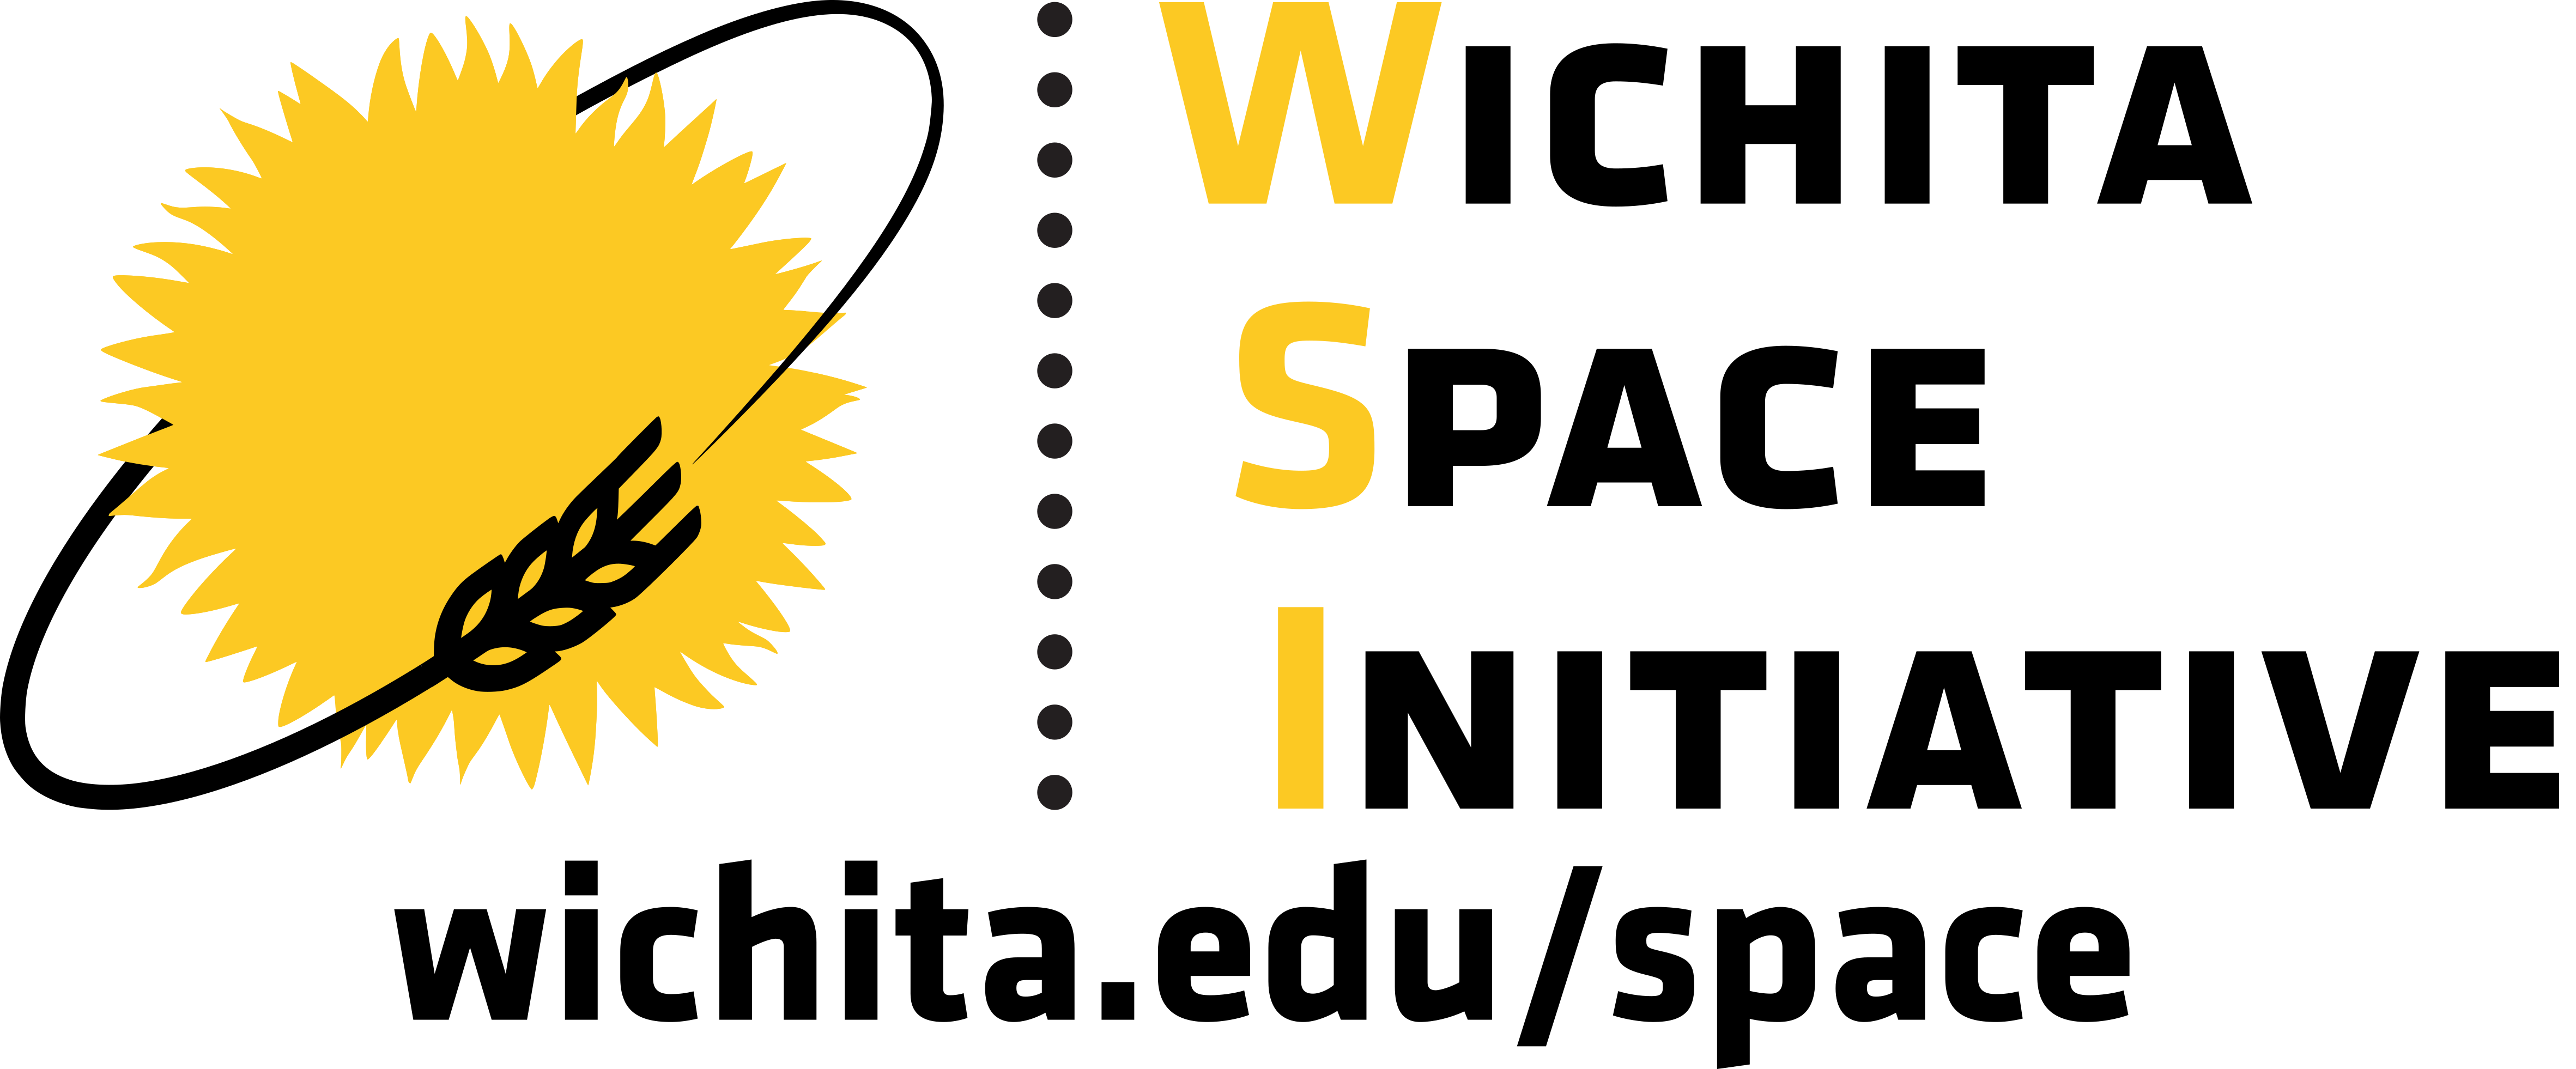 Wichita Space Initiative: wichita.edu/space